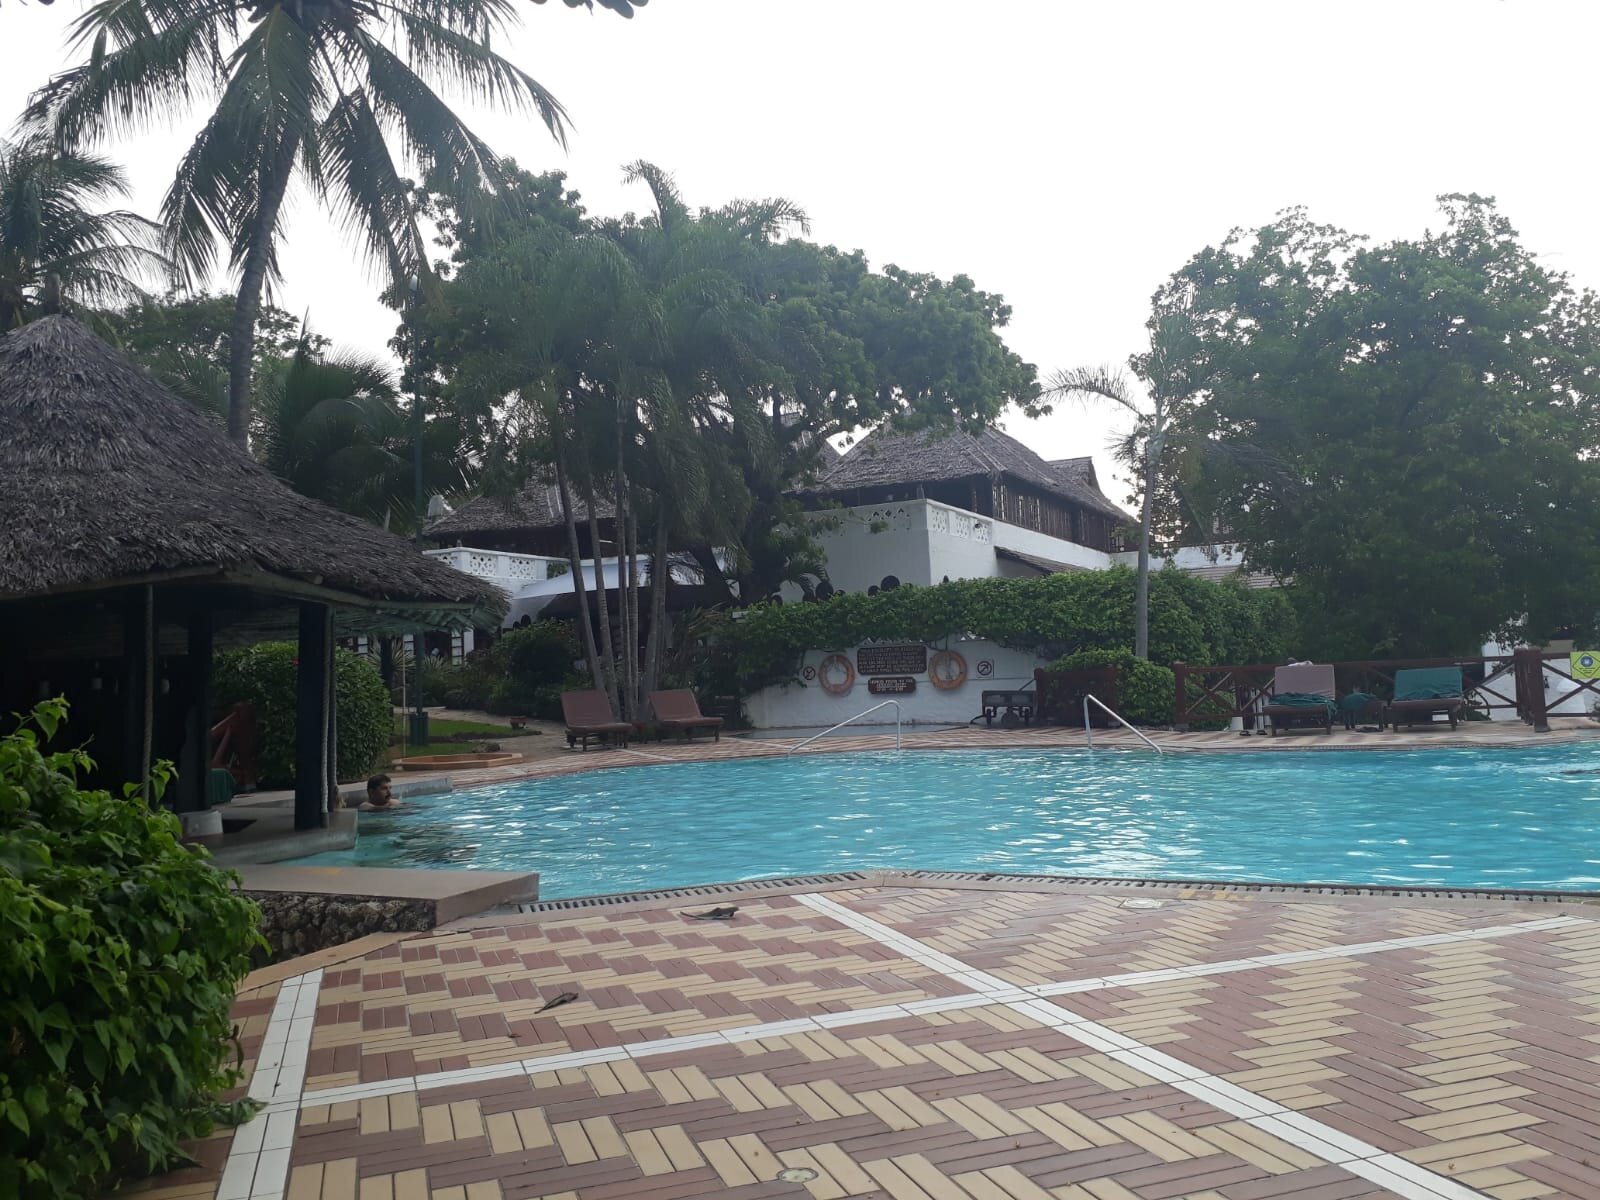 The pool at the Serena Beach Resort & Spa, Kenyan coast